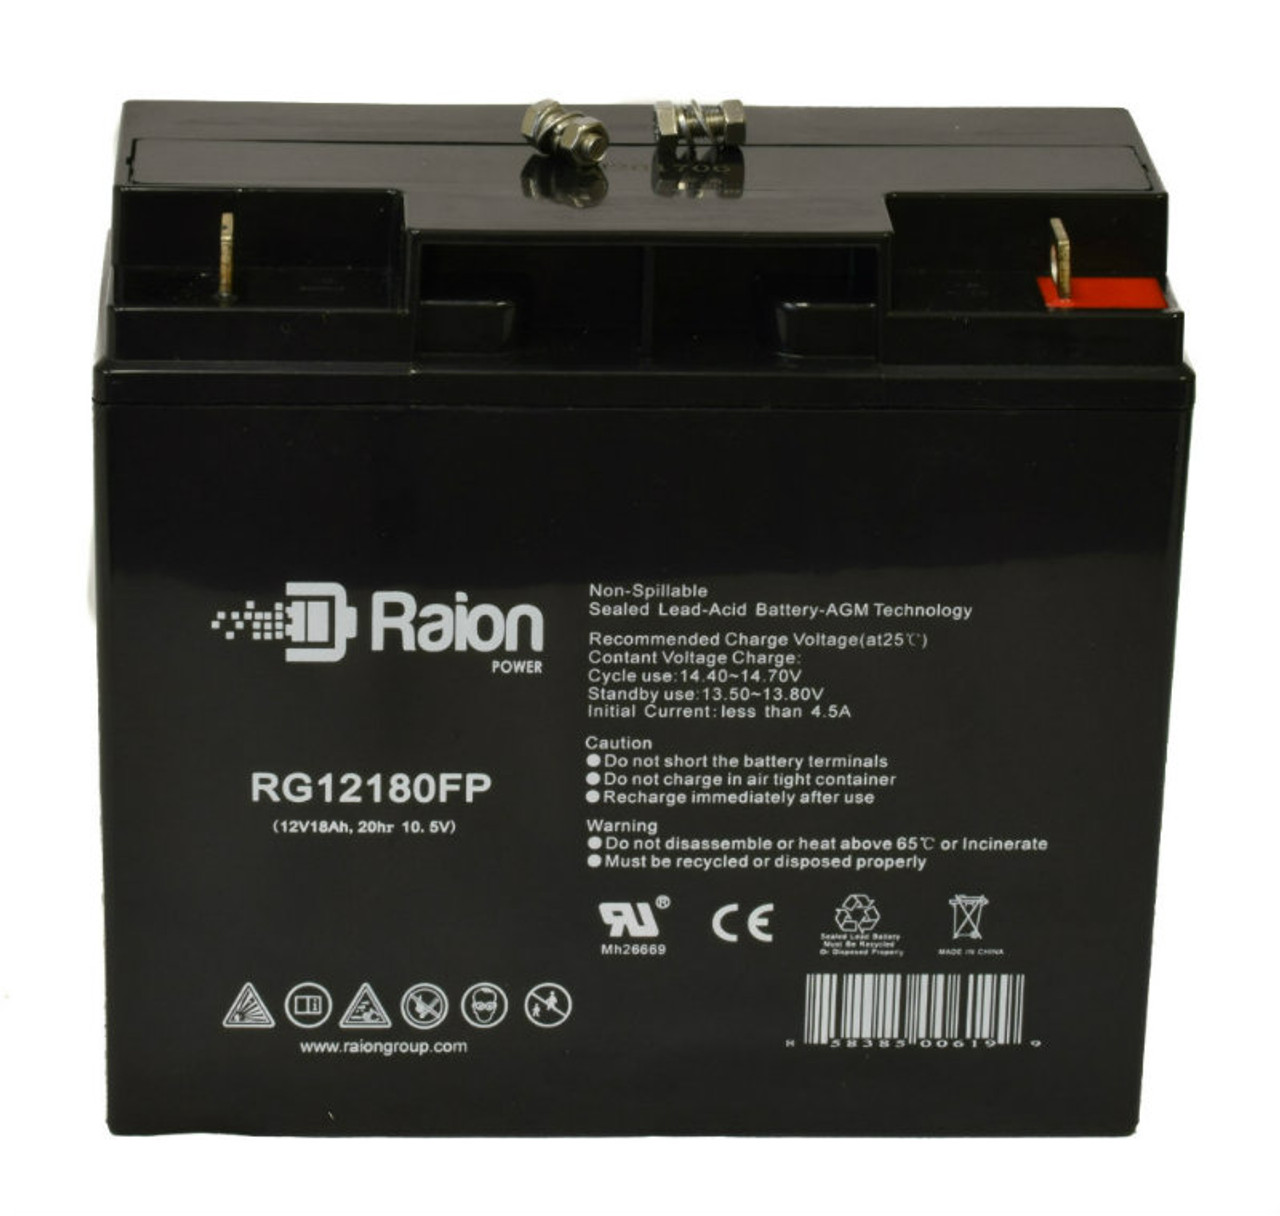 Raion Power RG12180FP 12V 18Ah Lead Acid Battery for Power Energy GB12-18